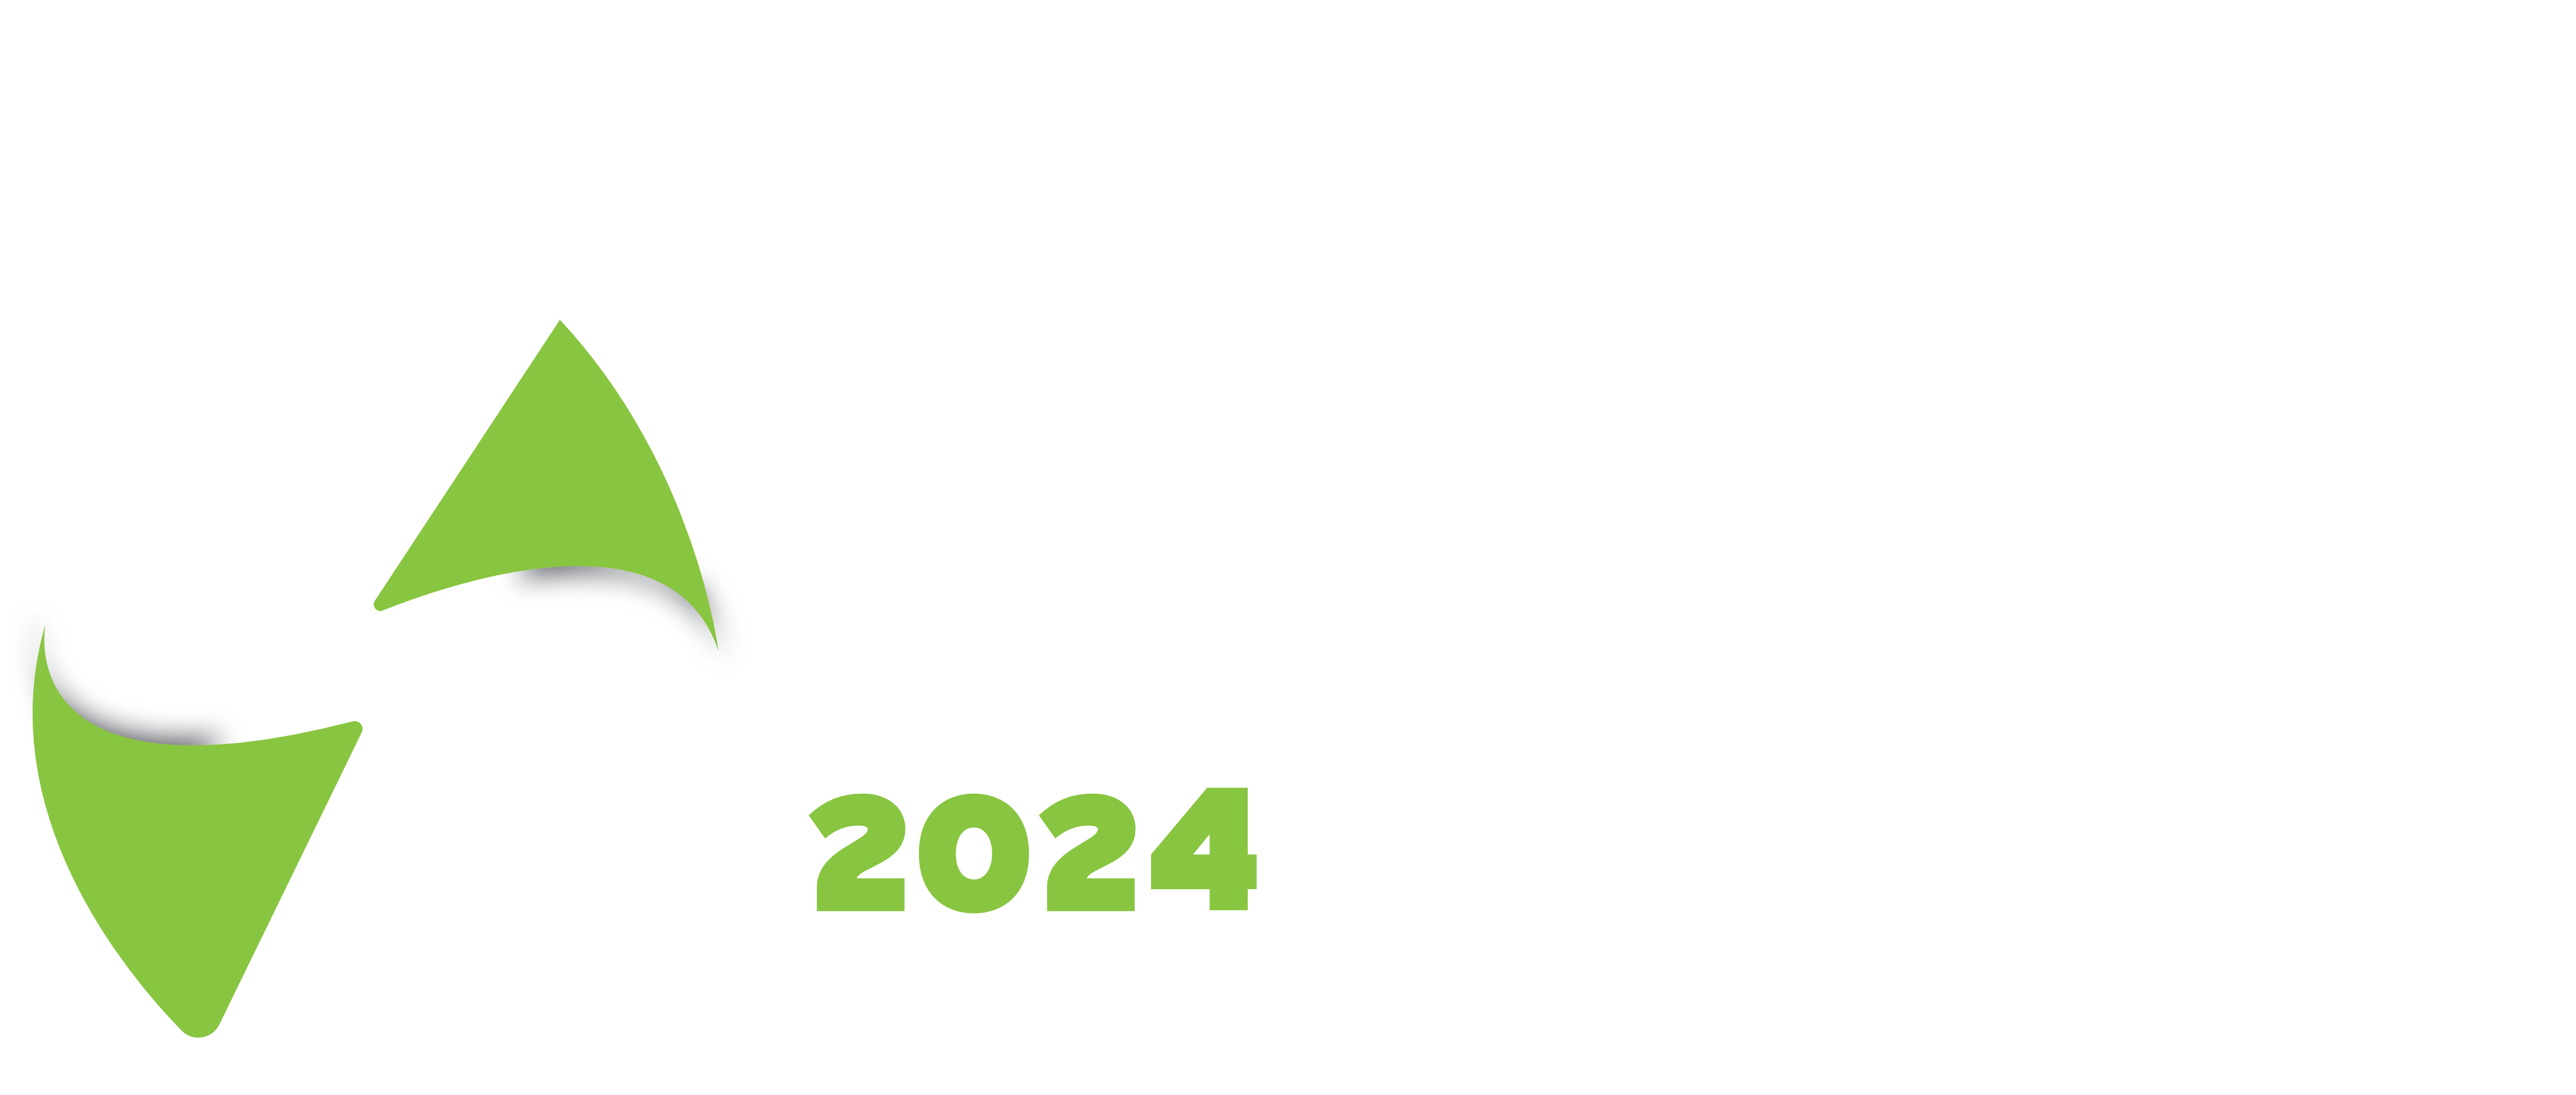 EIEM / Encuentro Internacional de Energía México